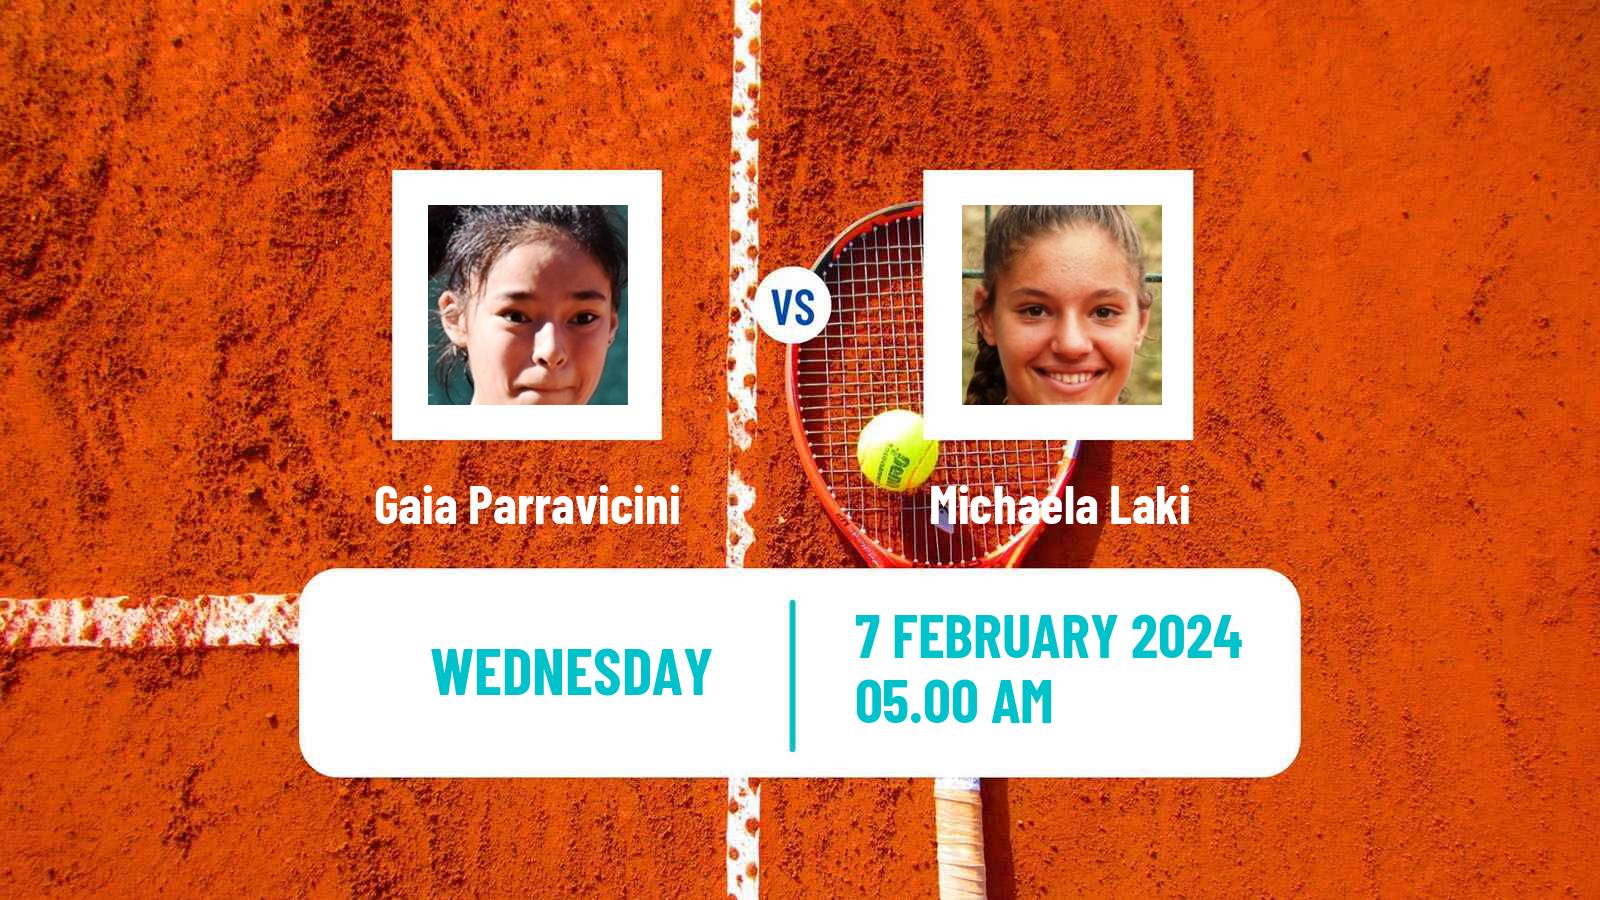 Tennis ITF W15 Monastir 4 Women Gaia Parravicini - Michaela Laki